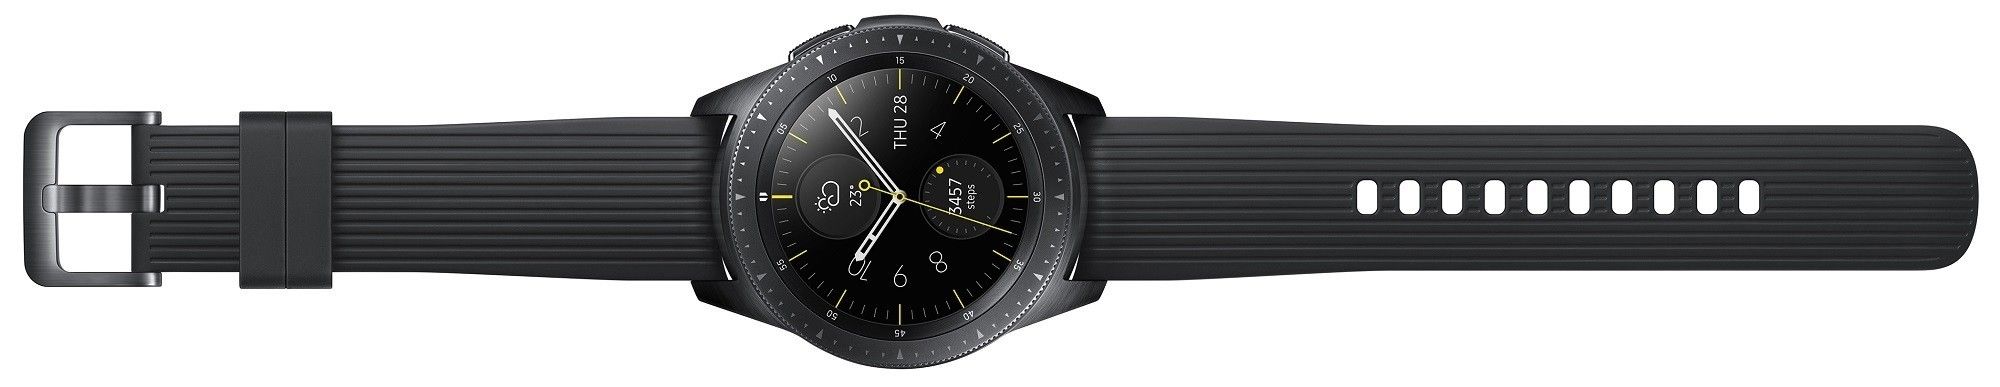 Акция на Смарт годинник Samsung Galaxy Watch 42mm (SM-R810NZKASEK) Black от Територія твоєї техніки - 6